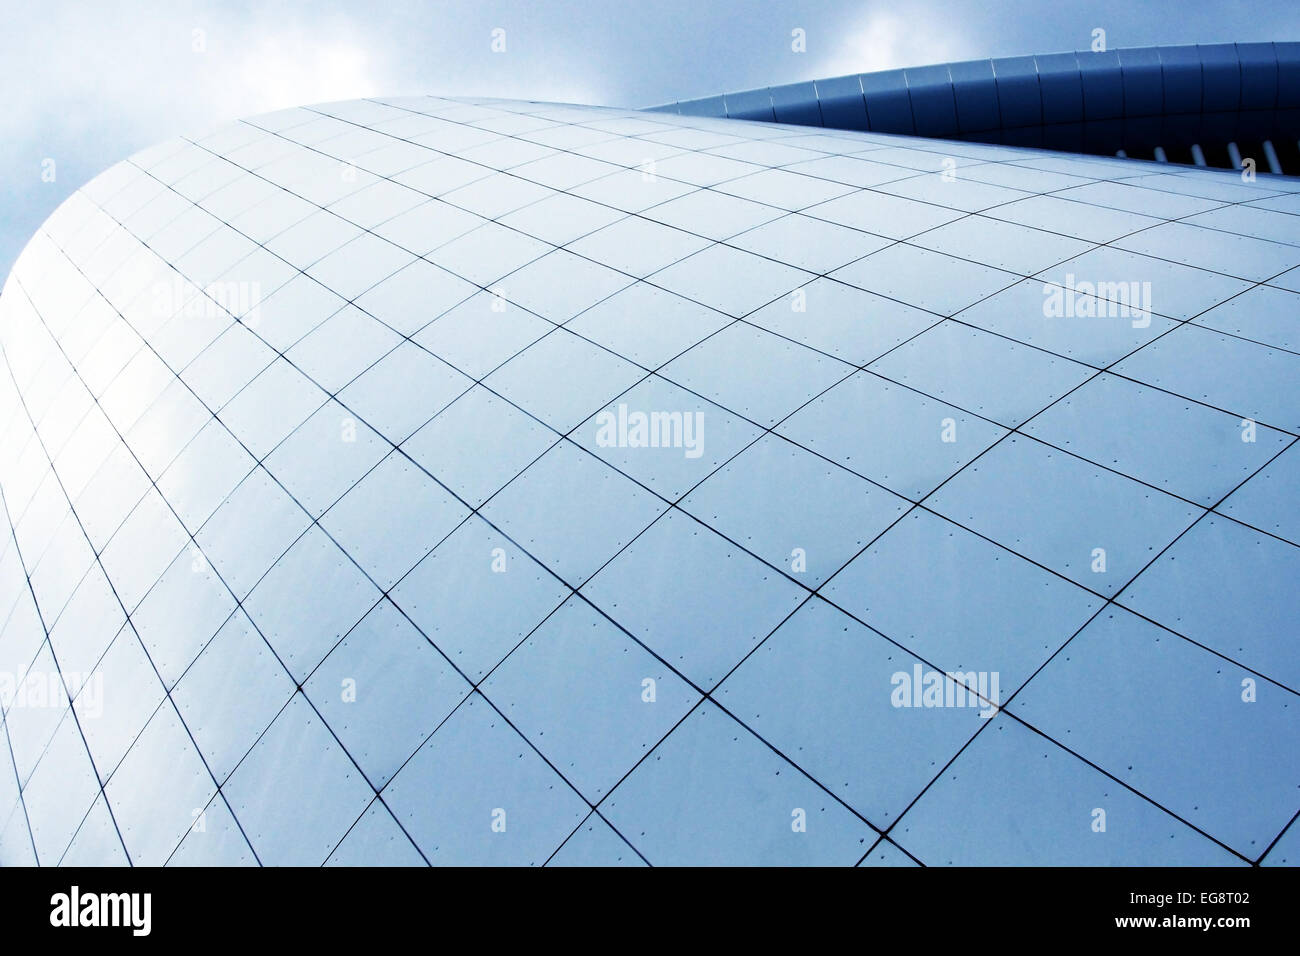 Diagonale Closeup des modernen Büros / gewerbliche / industrielle Gebäude. Raffinierte Turmwand angesichts der perfekten Kunststoff-Platten Stockfoto